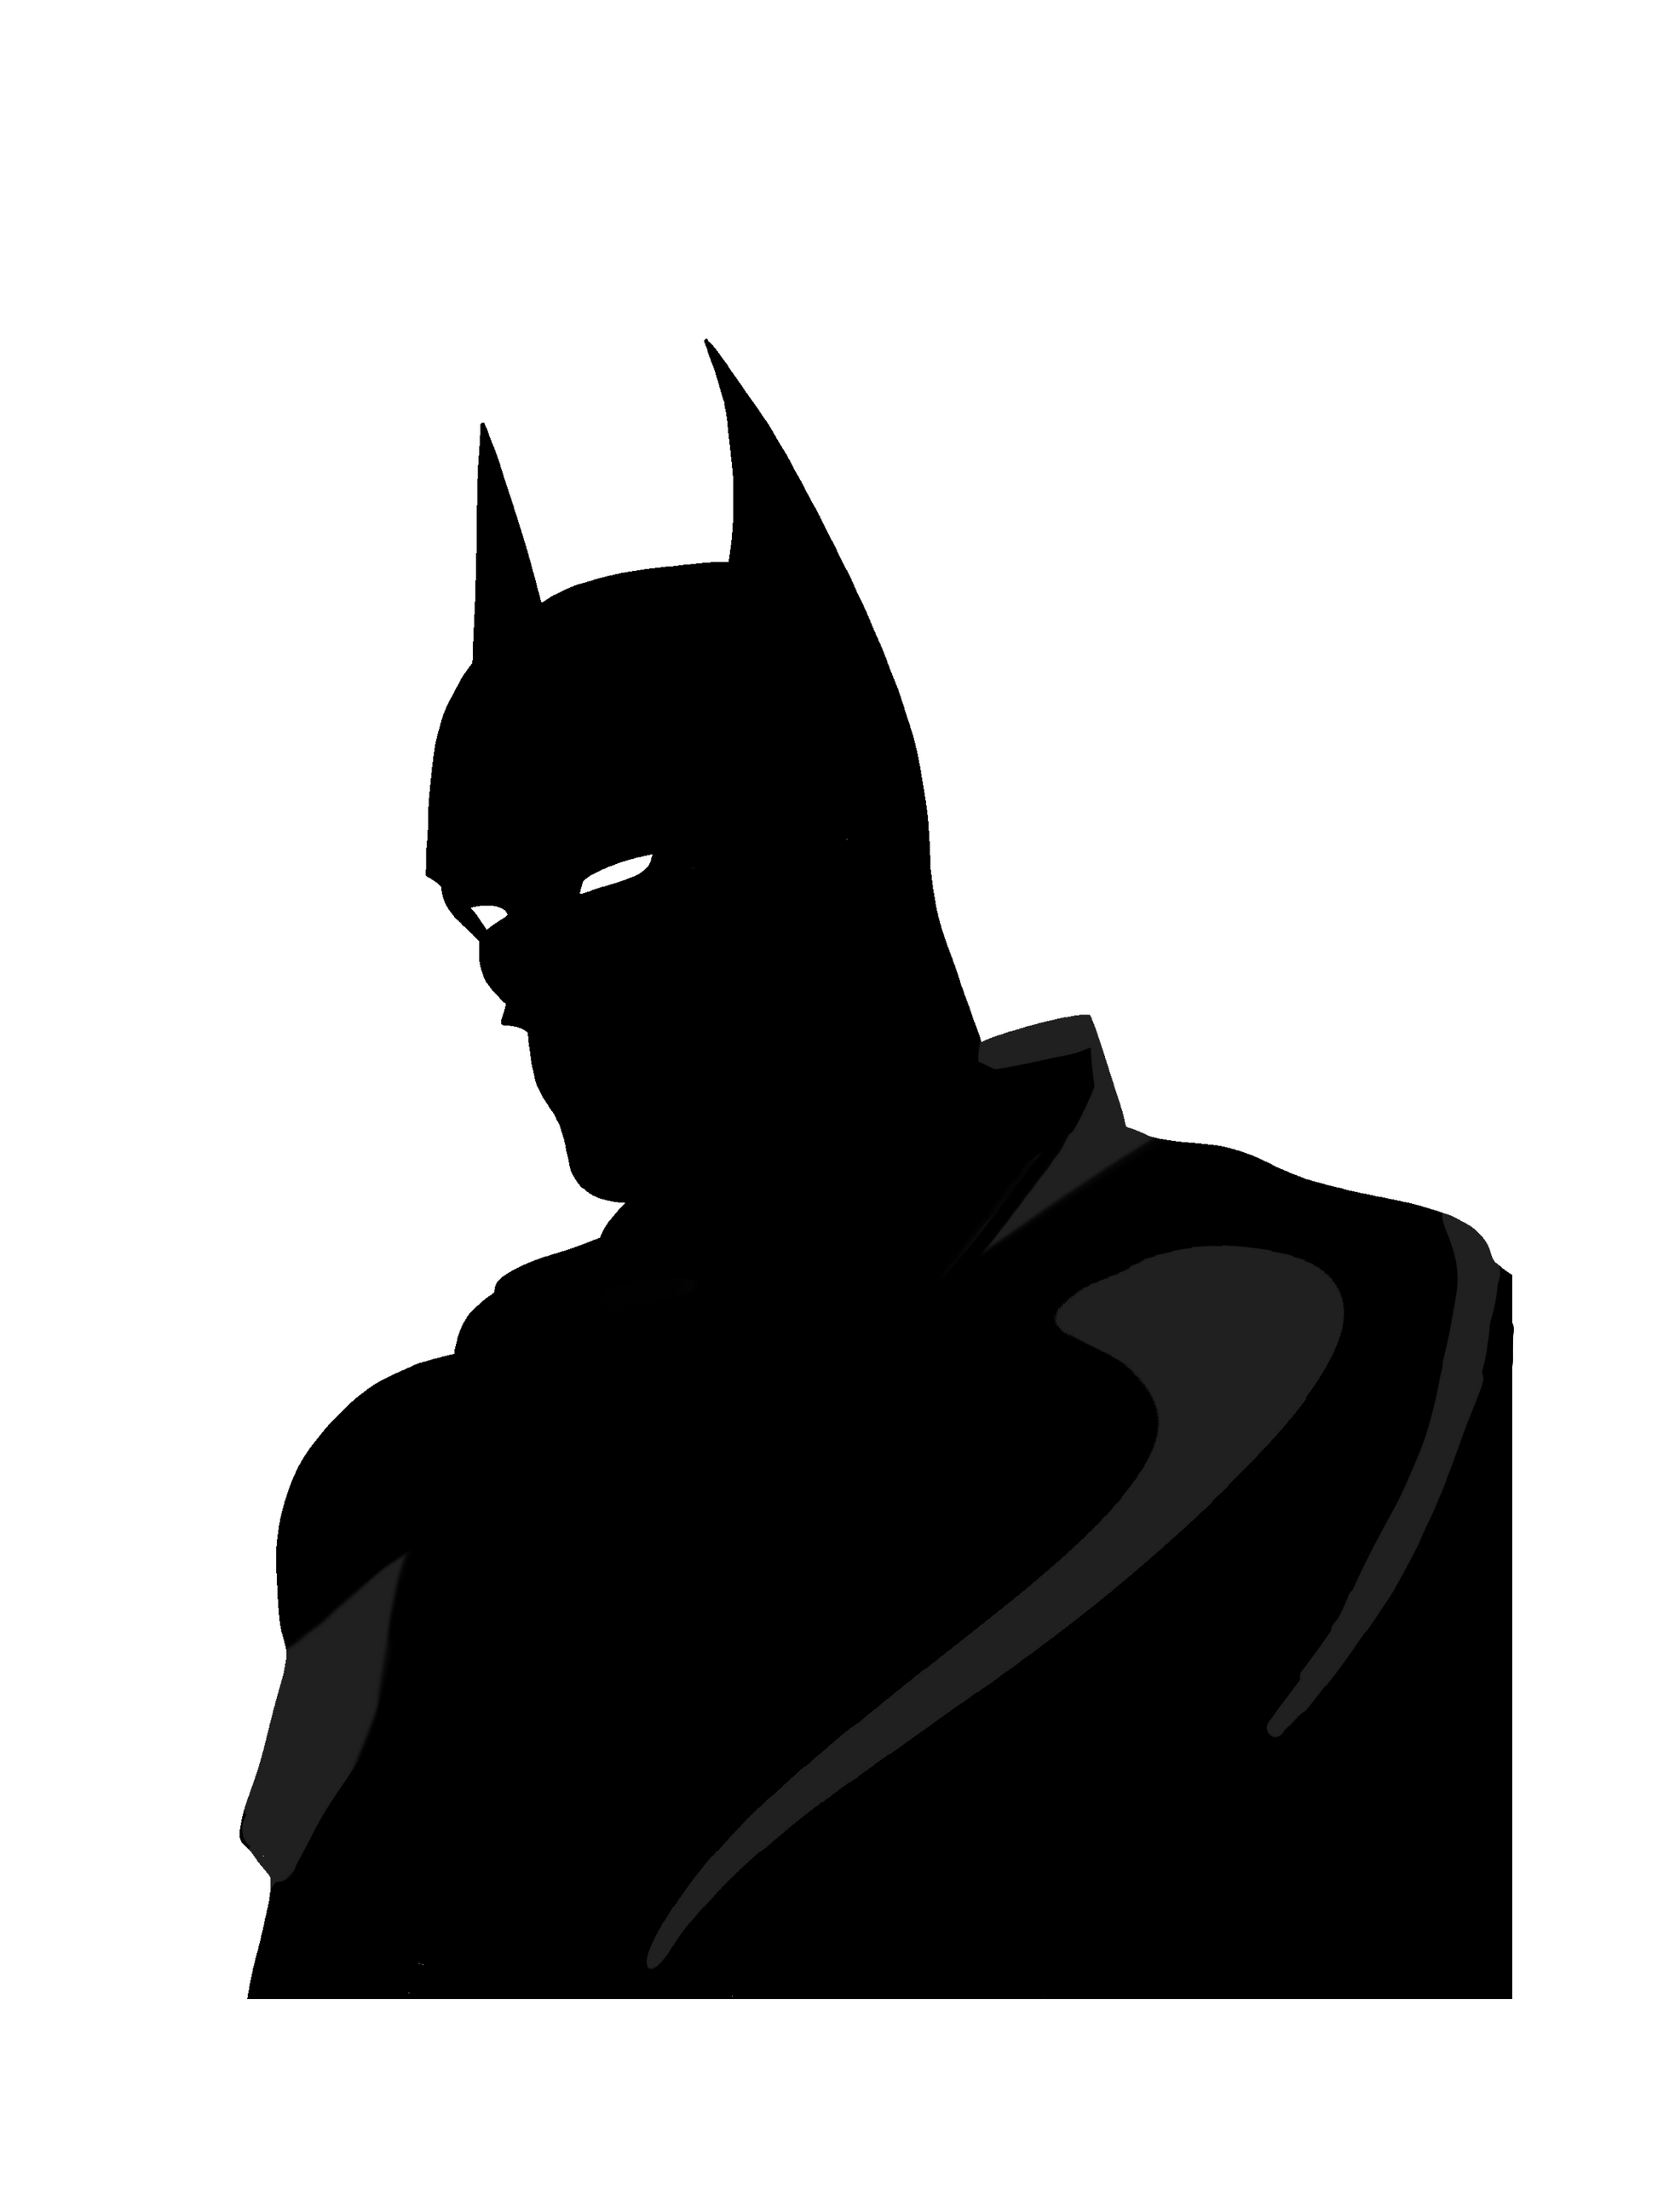 batman sticker – Lostxpanda